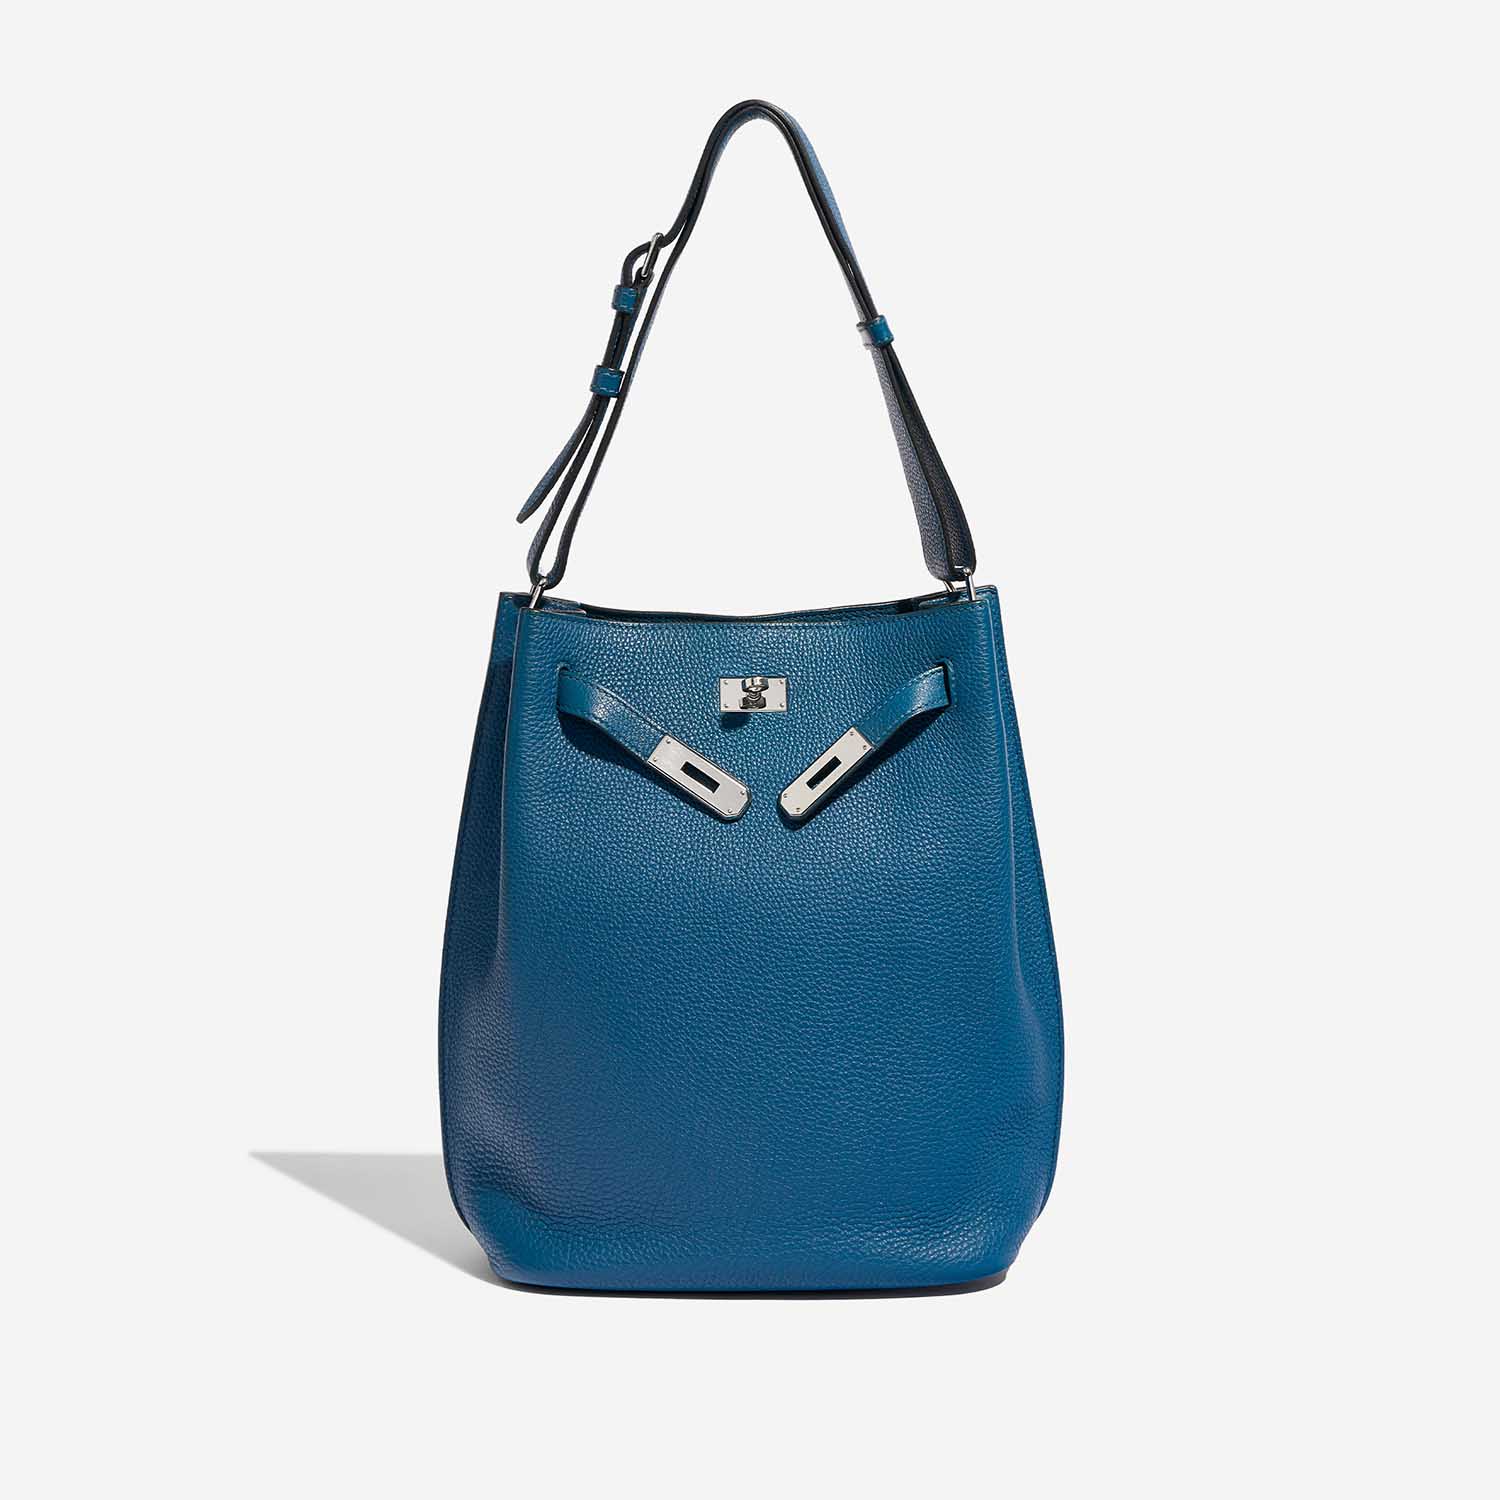 Pre-owned Hermès bag So Kelly 26 Togo Cobalt Blue Front Open | Sell your designer bag on Saclab.com